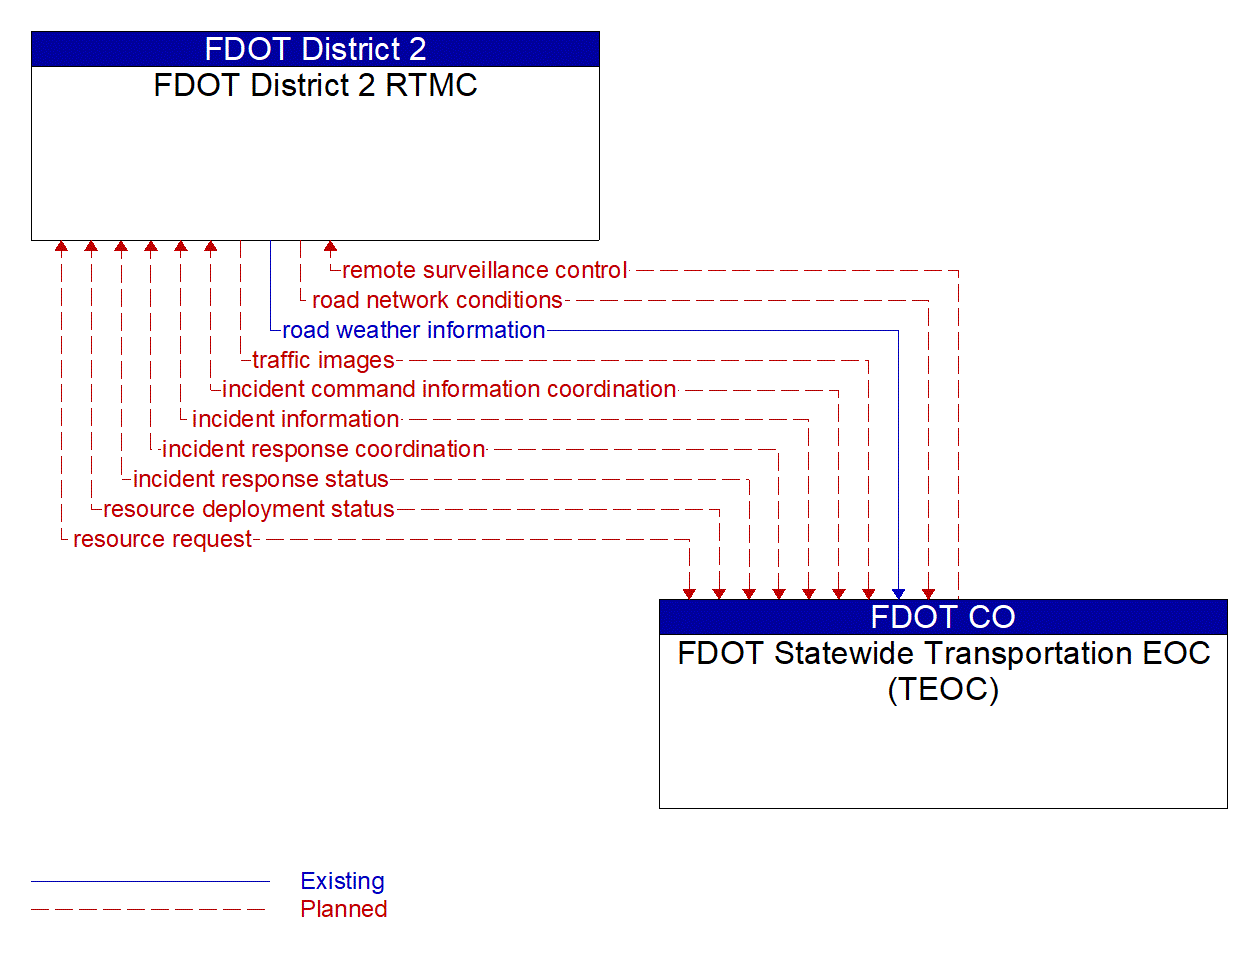 Architecture Flow Diagram: FDOT Statewide Transportation EOC (TEOC) <--> FDOT District 2 RTMC